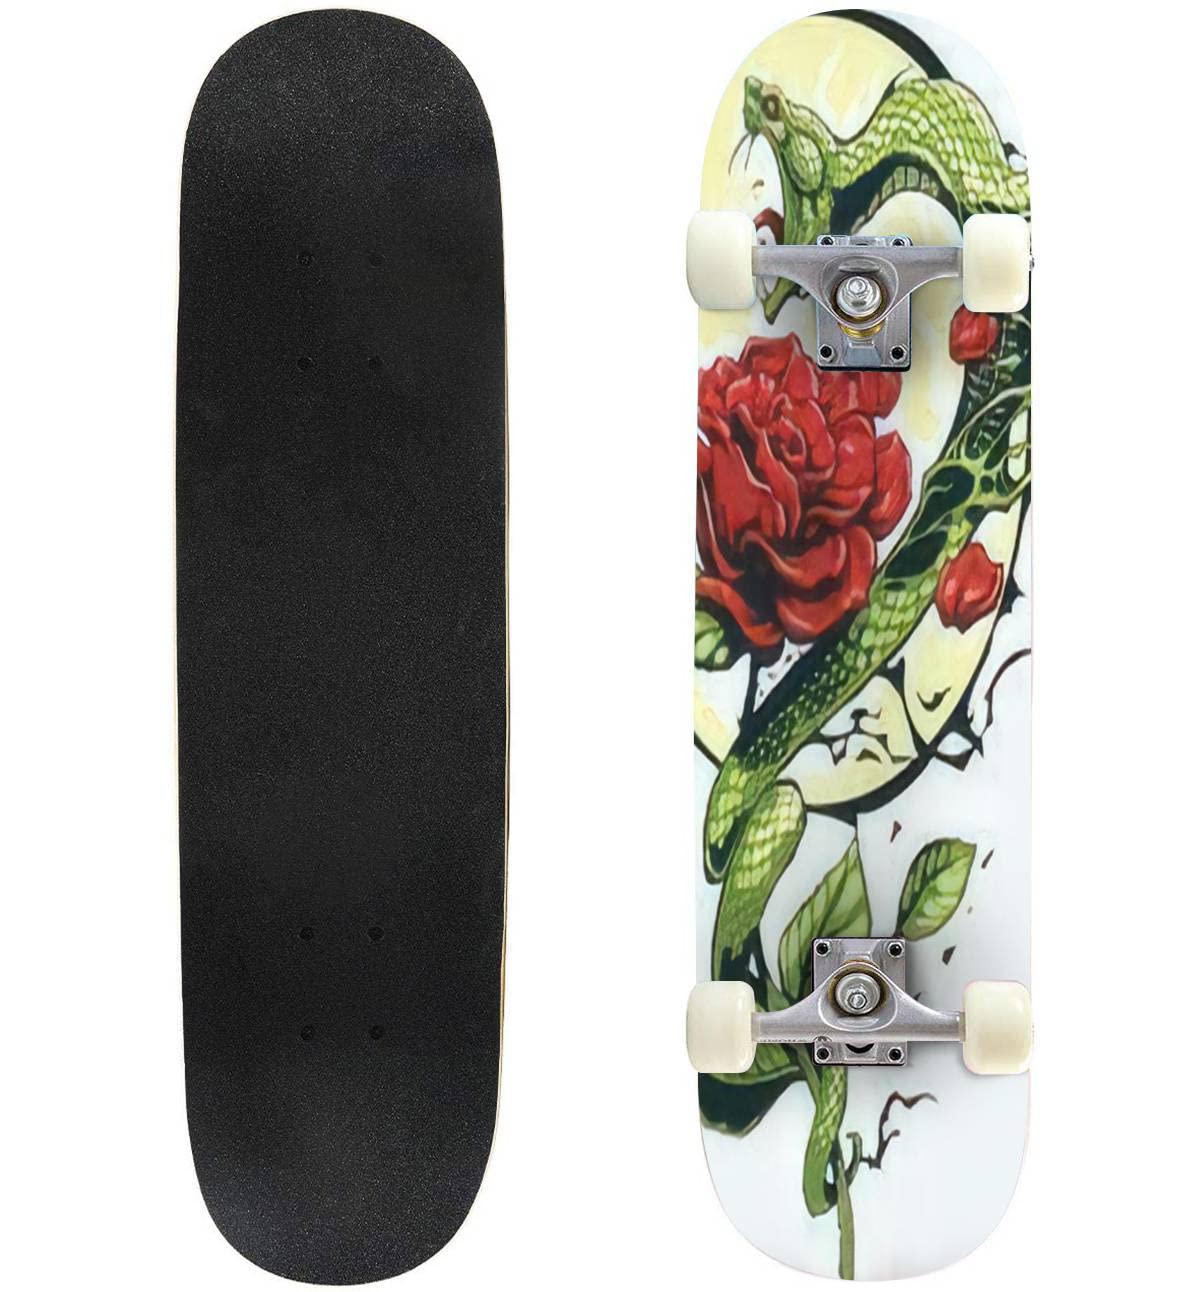 送料無料VLYWHEOUDJ Classic Concave Skateboard Snake and Rose Design for Shirt Longboard Standard Maple Deck Extreme Sport